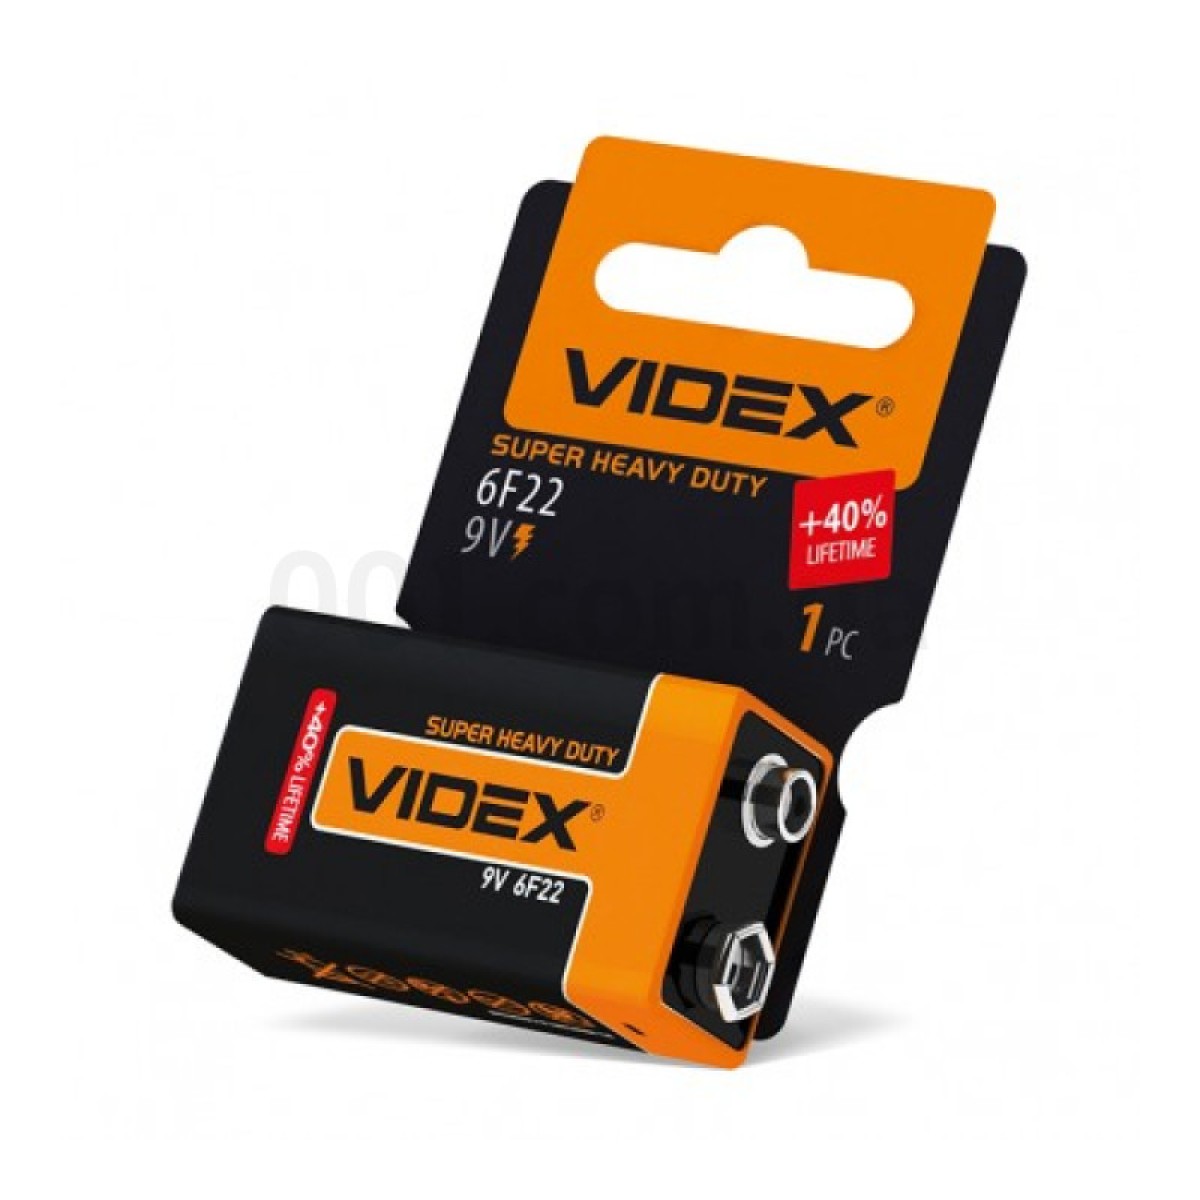 Батарейка сольова 6F22/9V (Крона) упаковка shrink card, VIDEX 256_256.jpg